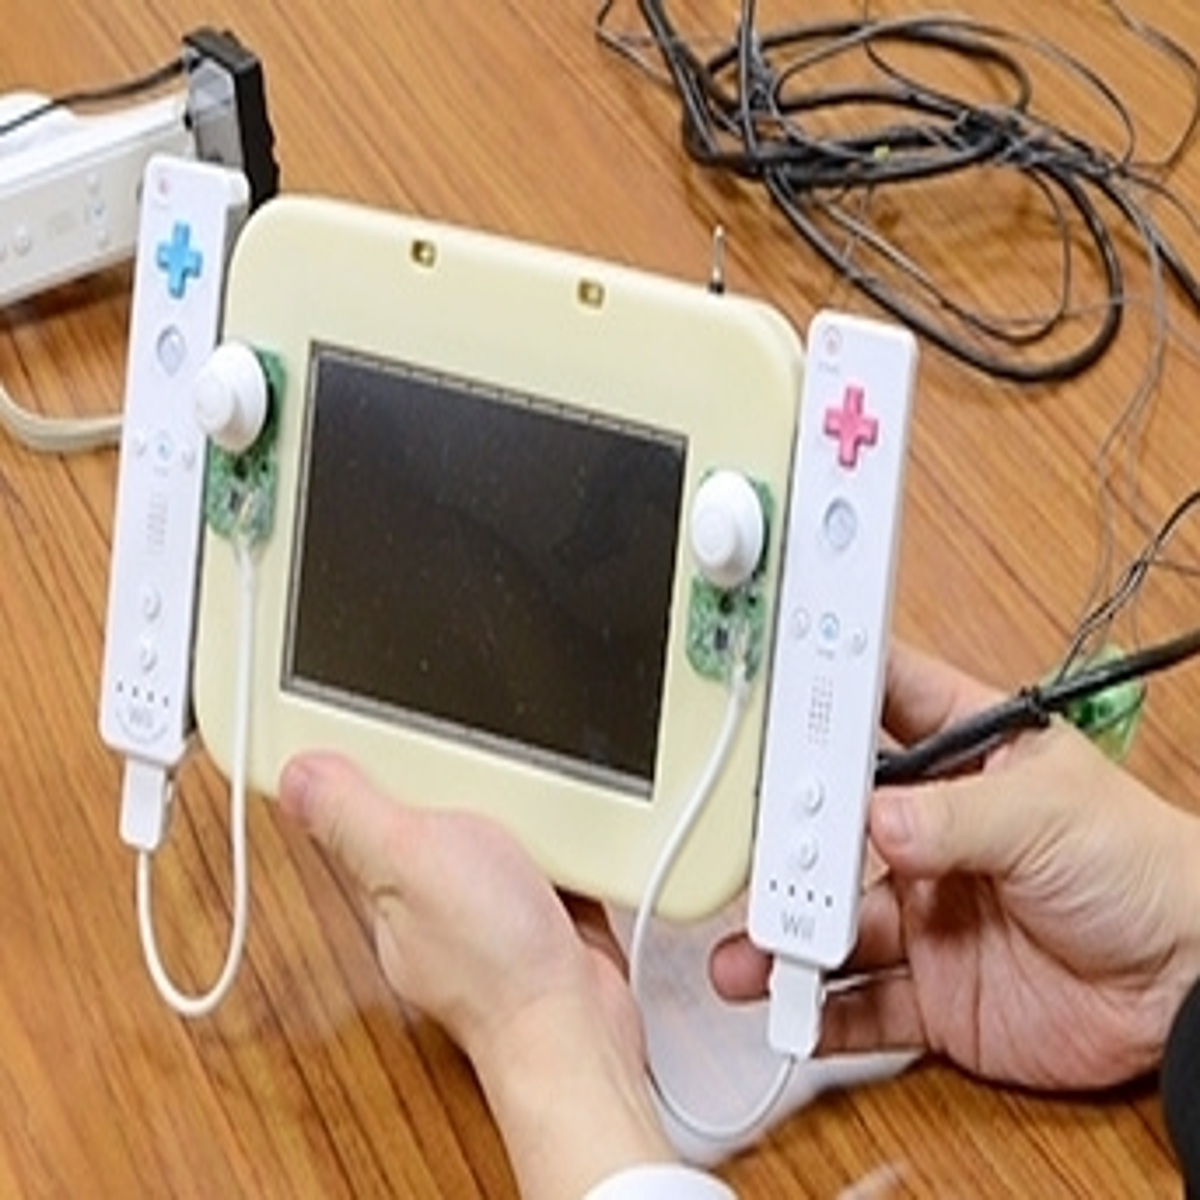 El prototipo del GamePad de Wii U eran dos Wii Remotes atados a un monitor